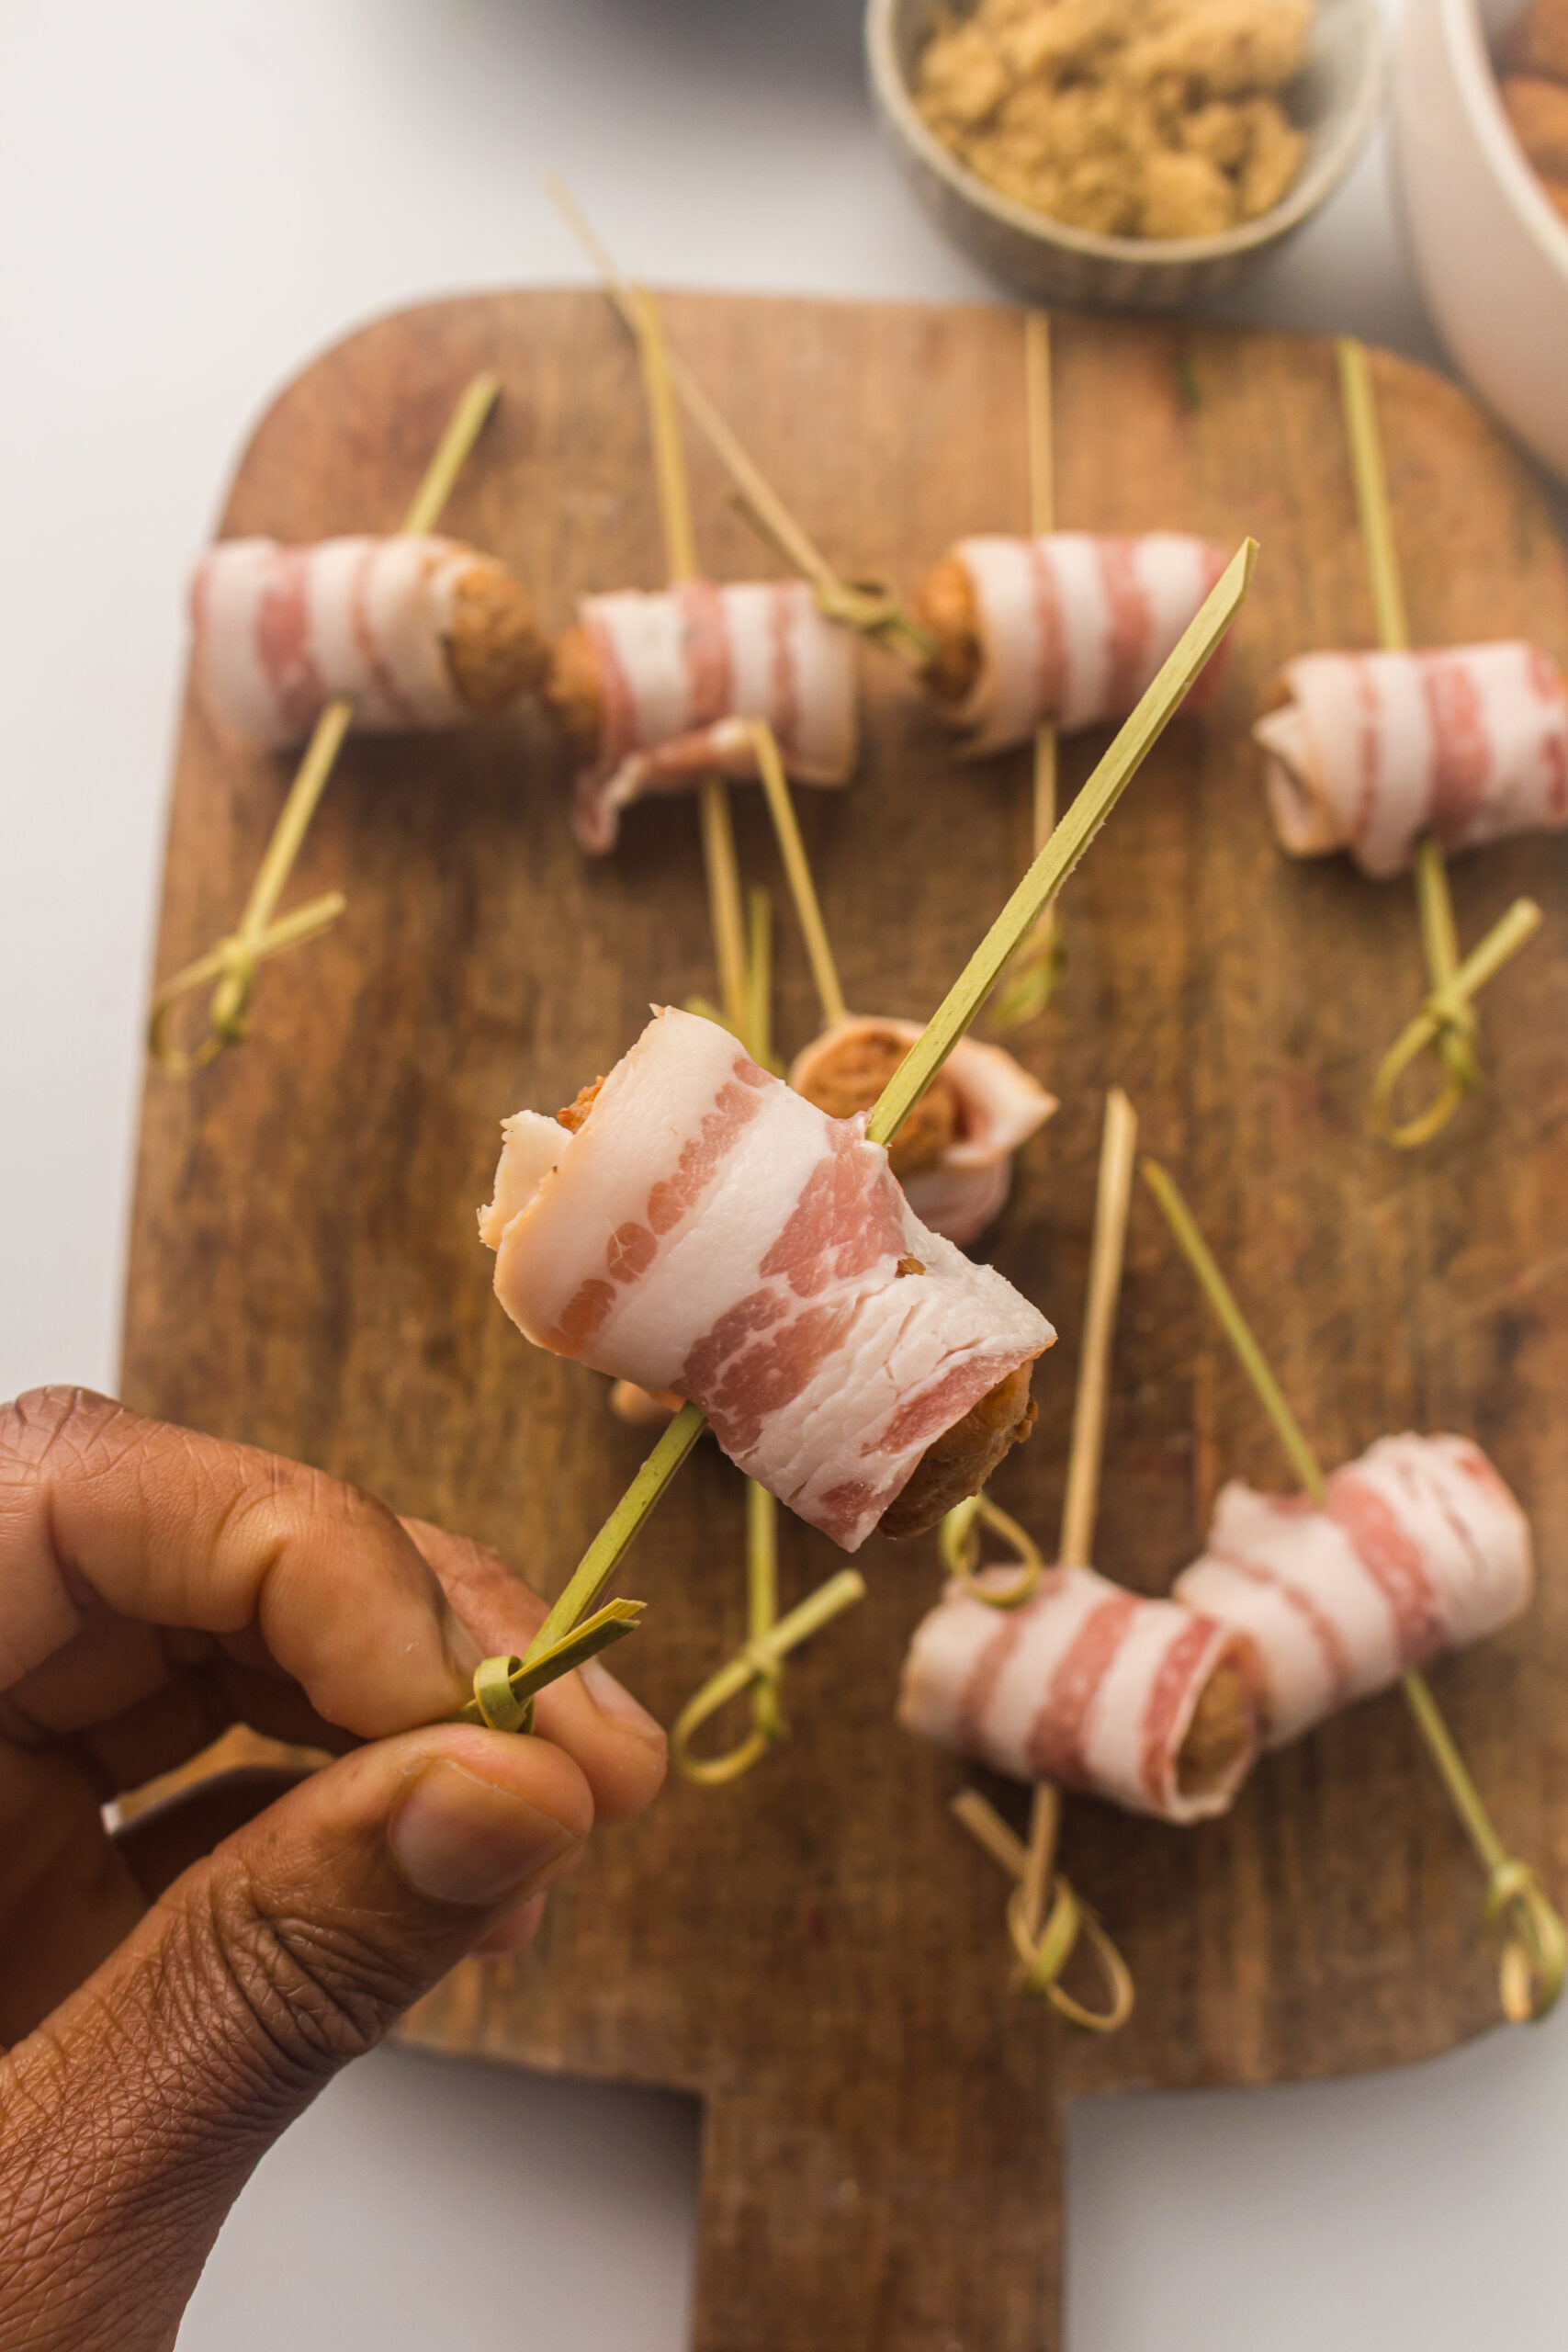 wrapping bacon around the smokies 